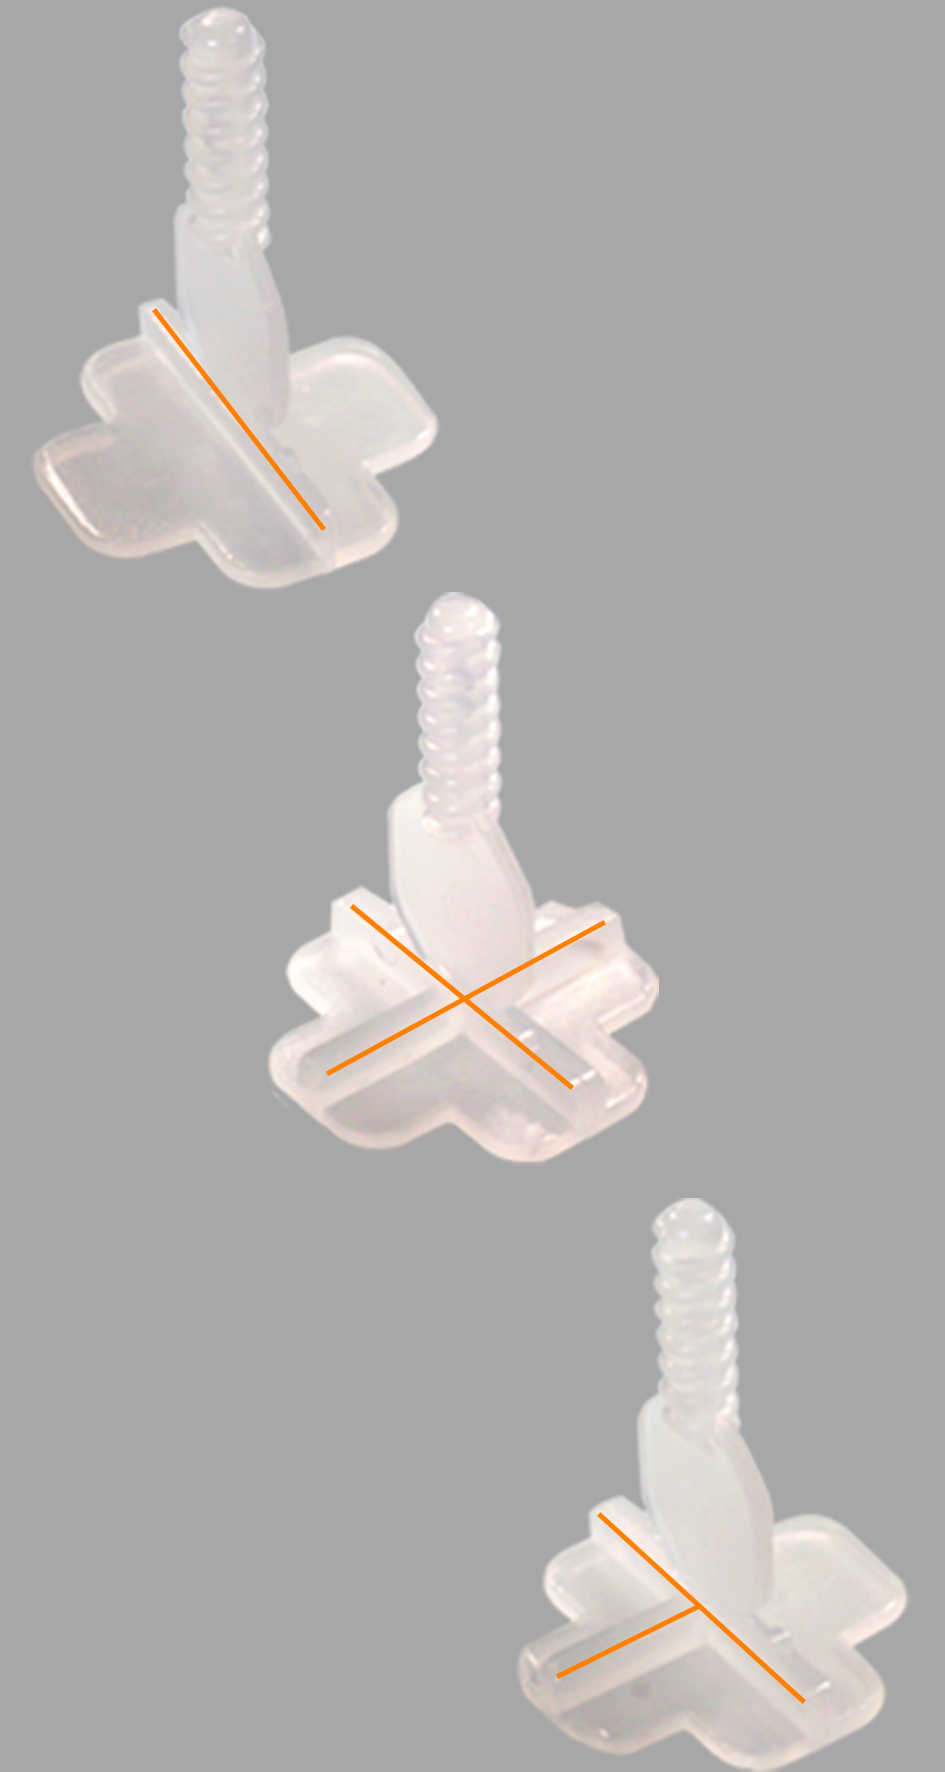 Die Gewindelaschen des Fliesen-Nivelliersystems: von oben nach unten: Basis-Gewindelasche 2 mm, Kreuz-Gewindelasche 2 mm, T-Stück-Gewindelasche 2 mm